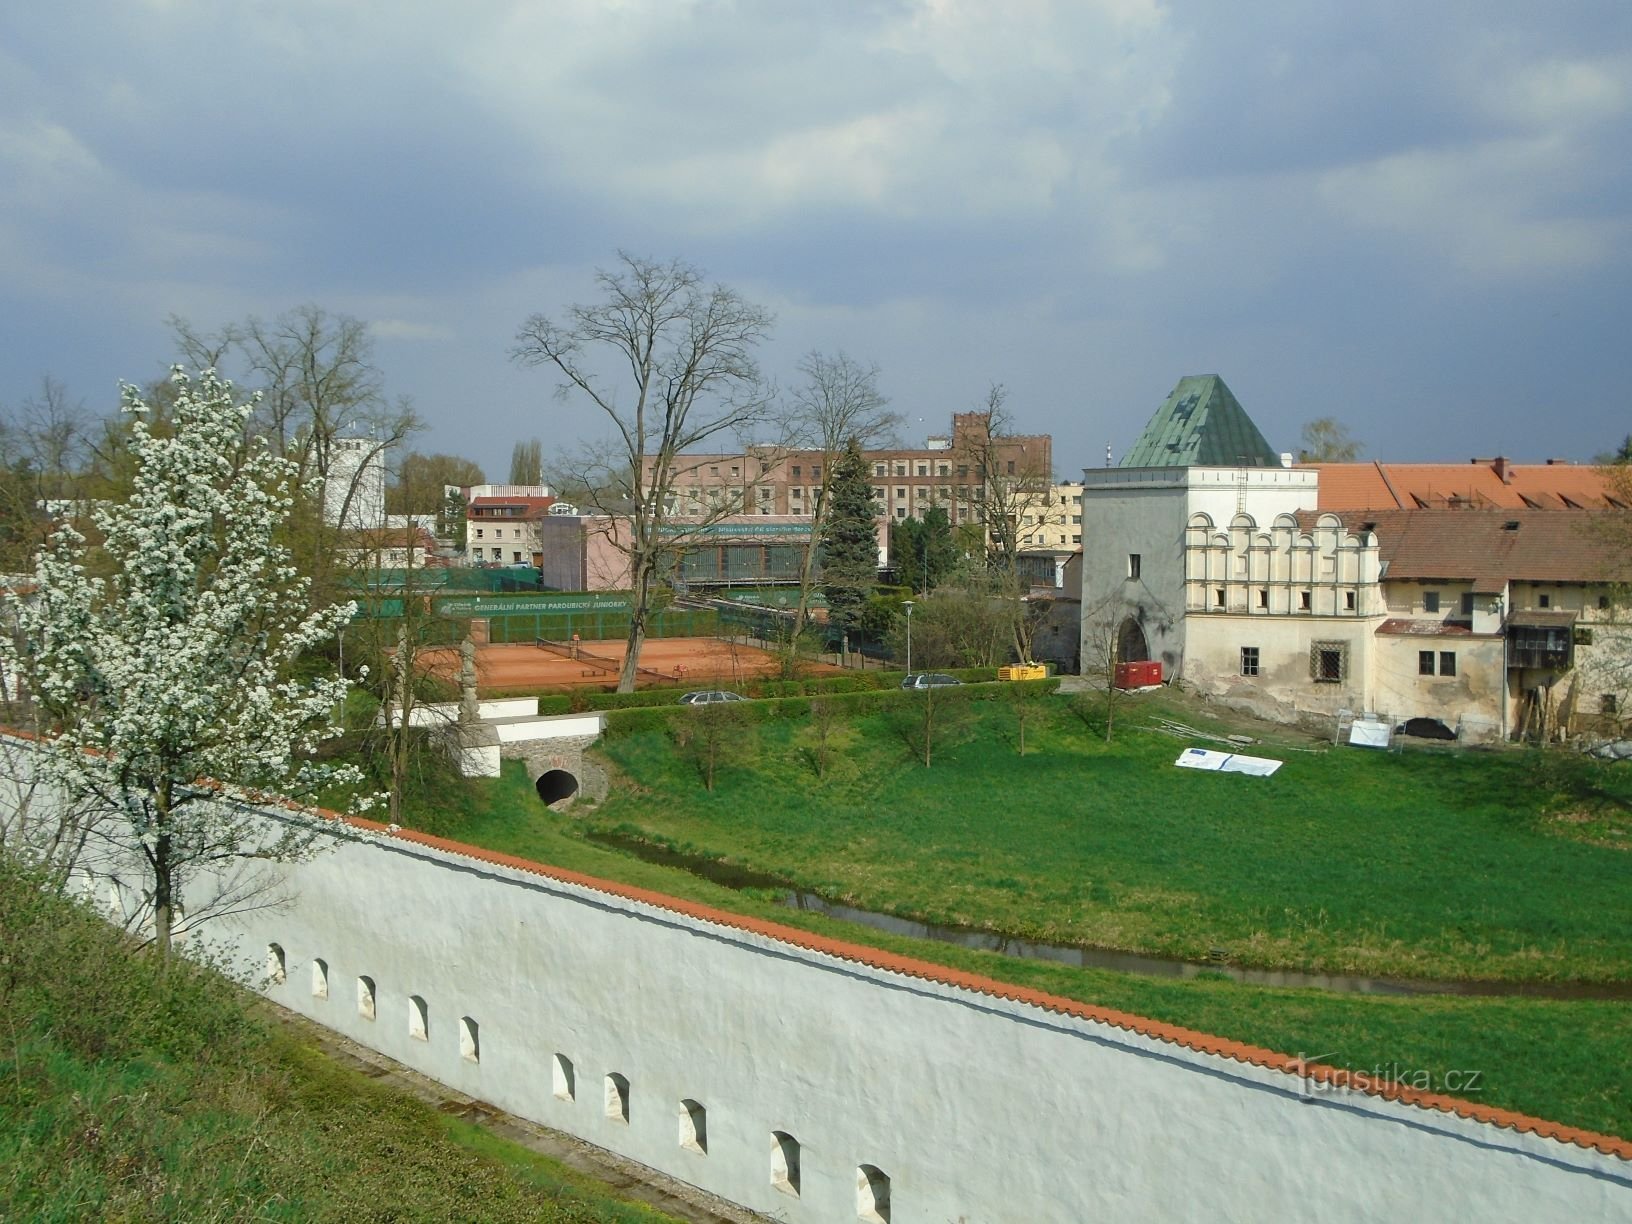 Kilátás a vár és Příhrádek közötti hídra (Pardubice, 17.4.2018.)